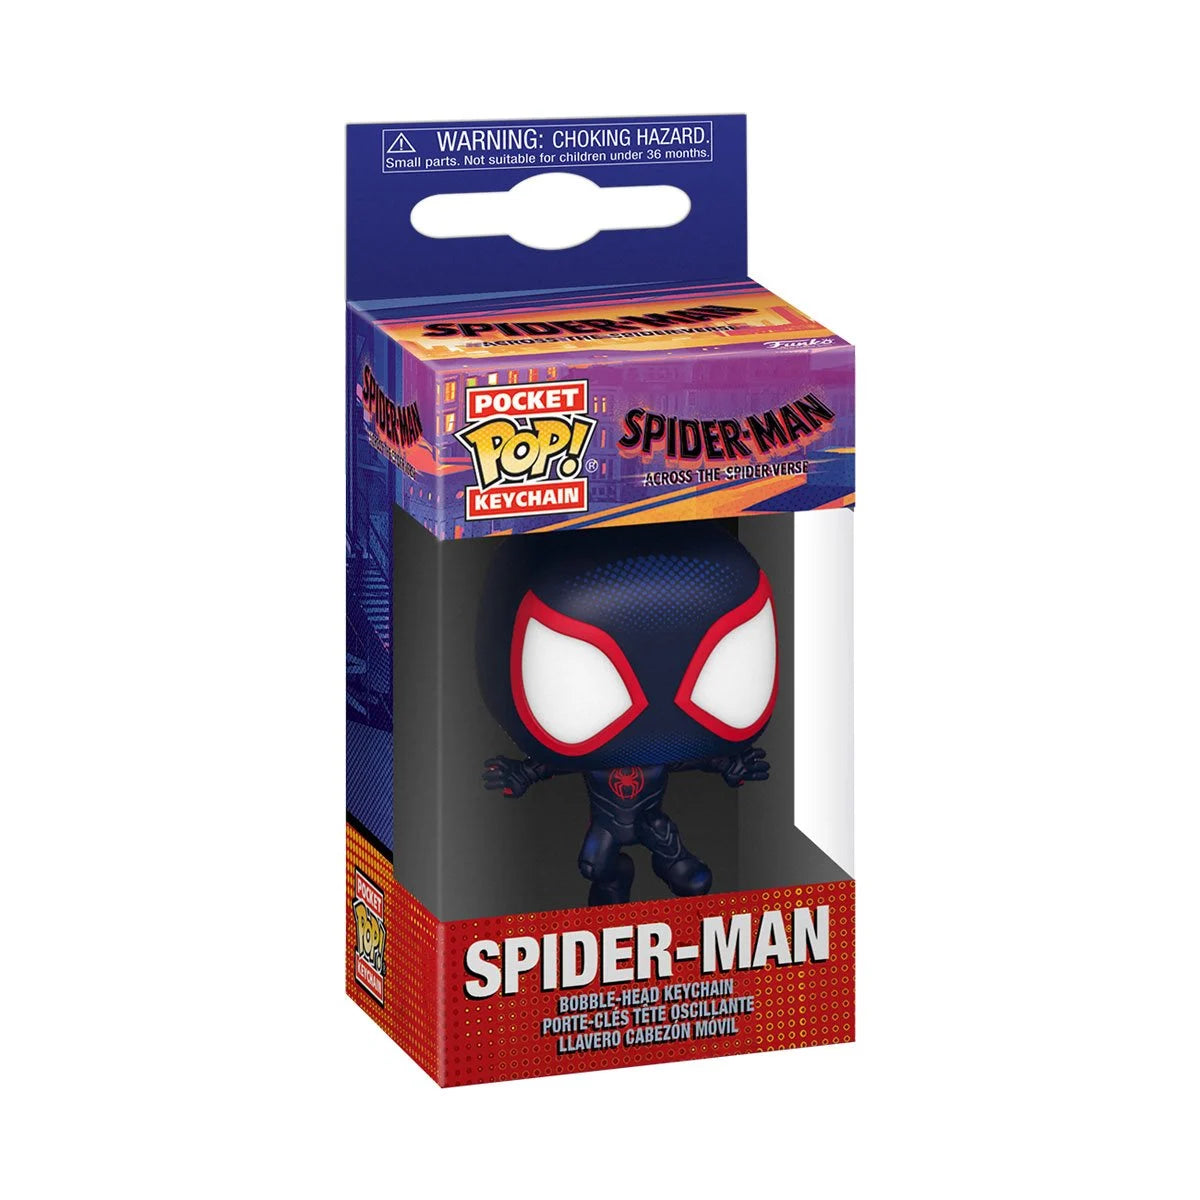 Spider-Man Across the Spider-Verse Spider-Man Pocket Pop! Key Chain